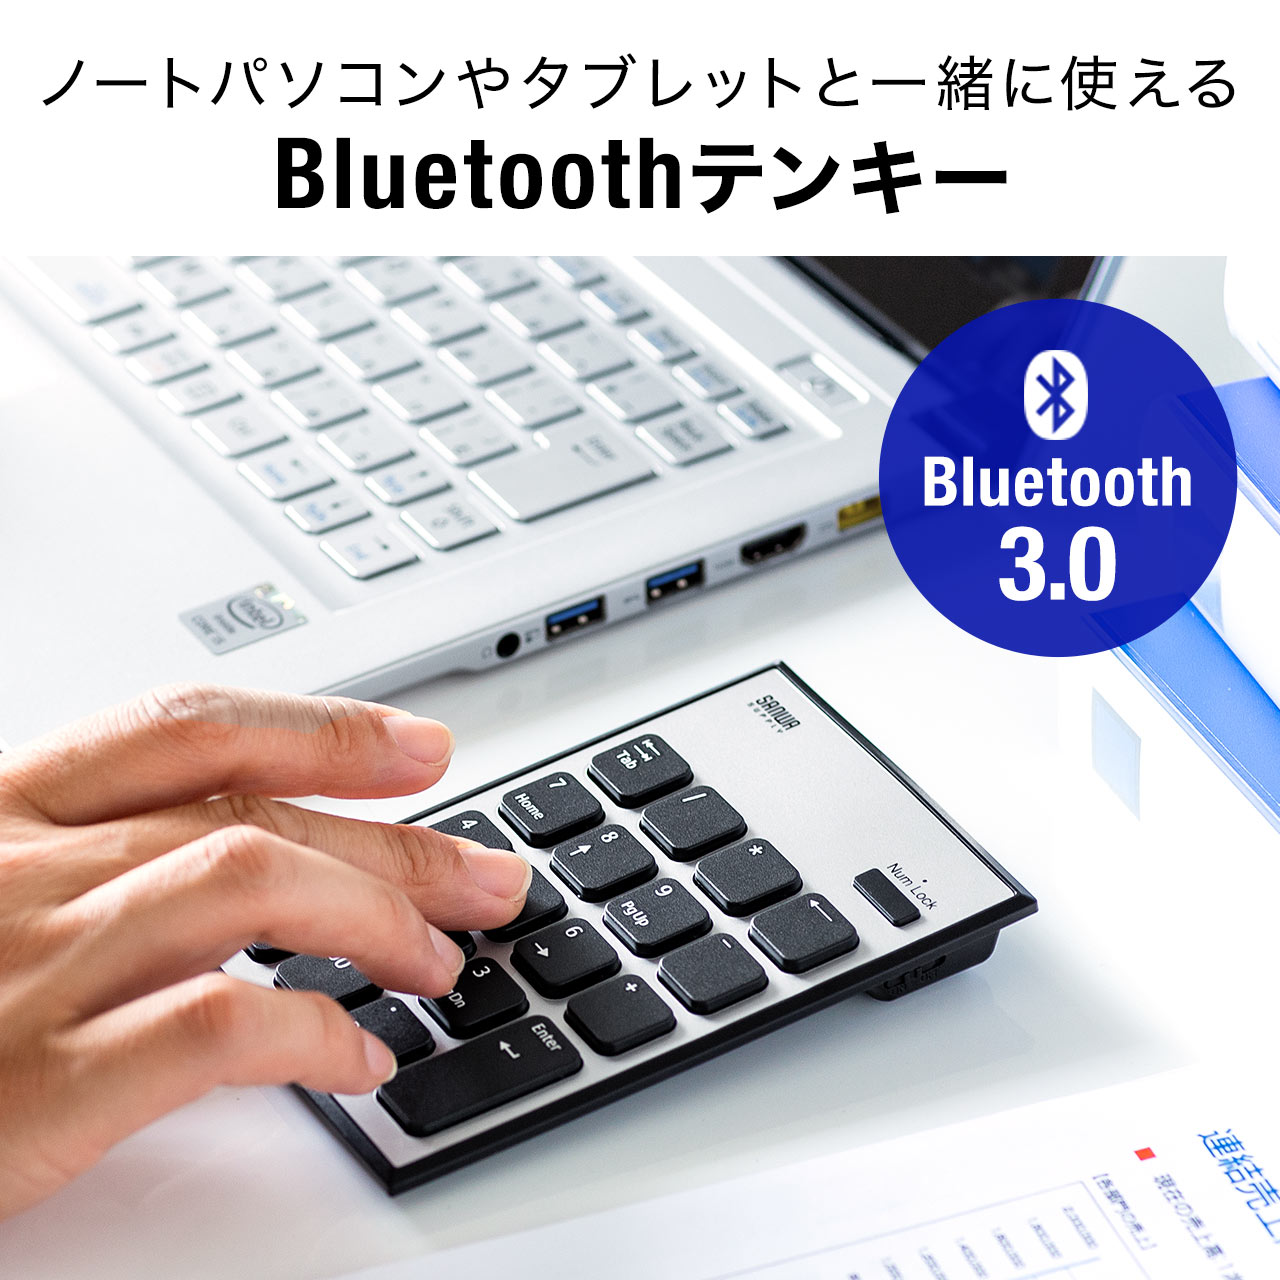 テンキー ワイヤレス Bluetooth ワイヤレステンキー 無線 ブルートゥース モバイル 持ち運び 薄型 小型 電池式 Windows専用 薄い 軽い 400-NT003